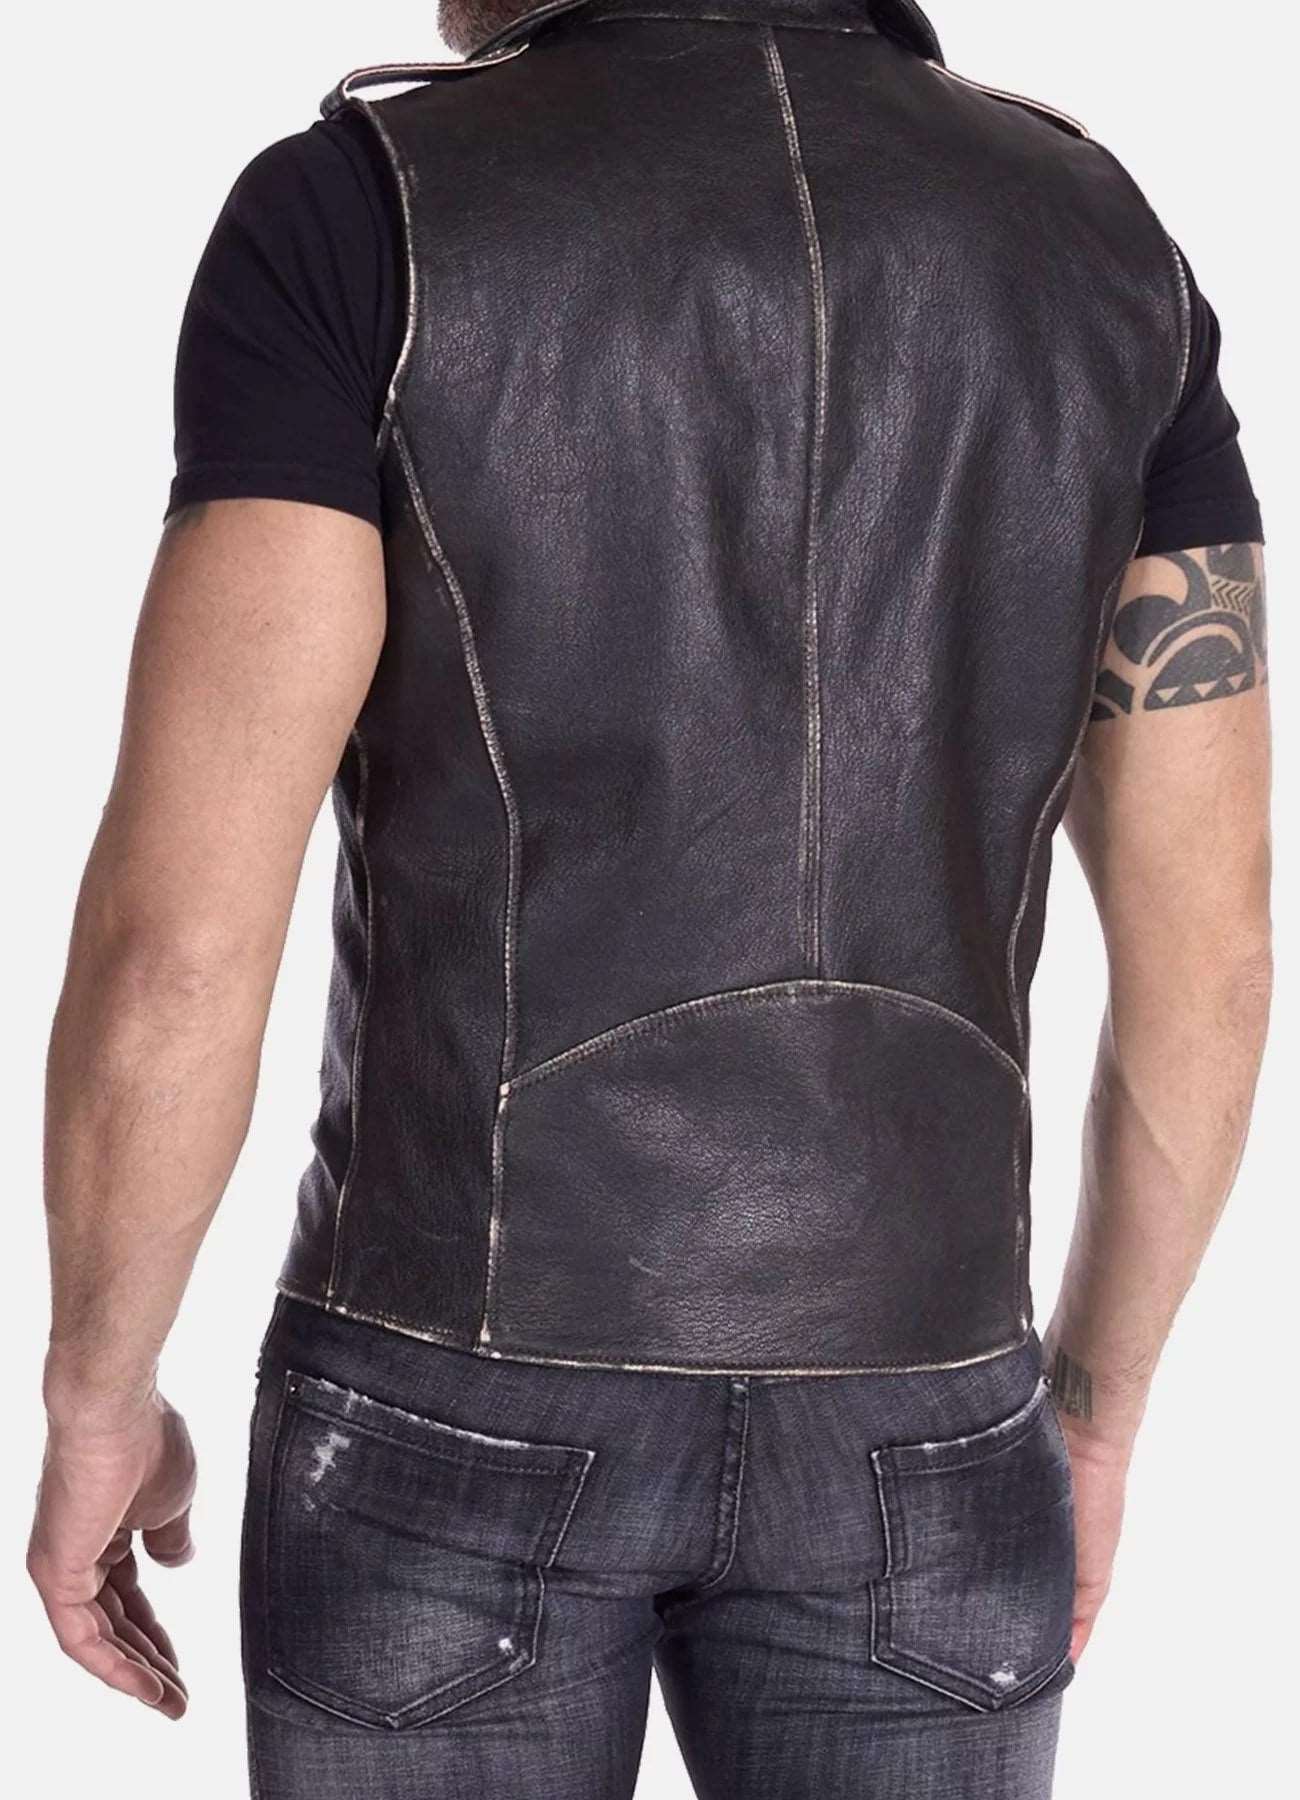 Men's Distressed Leather Biker Vest In Black